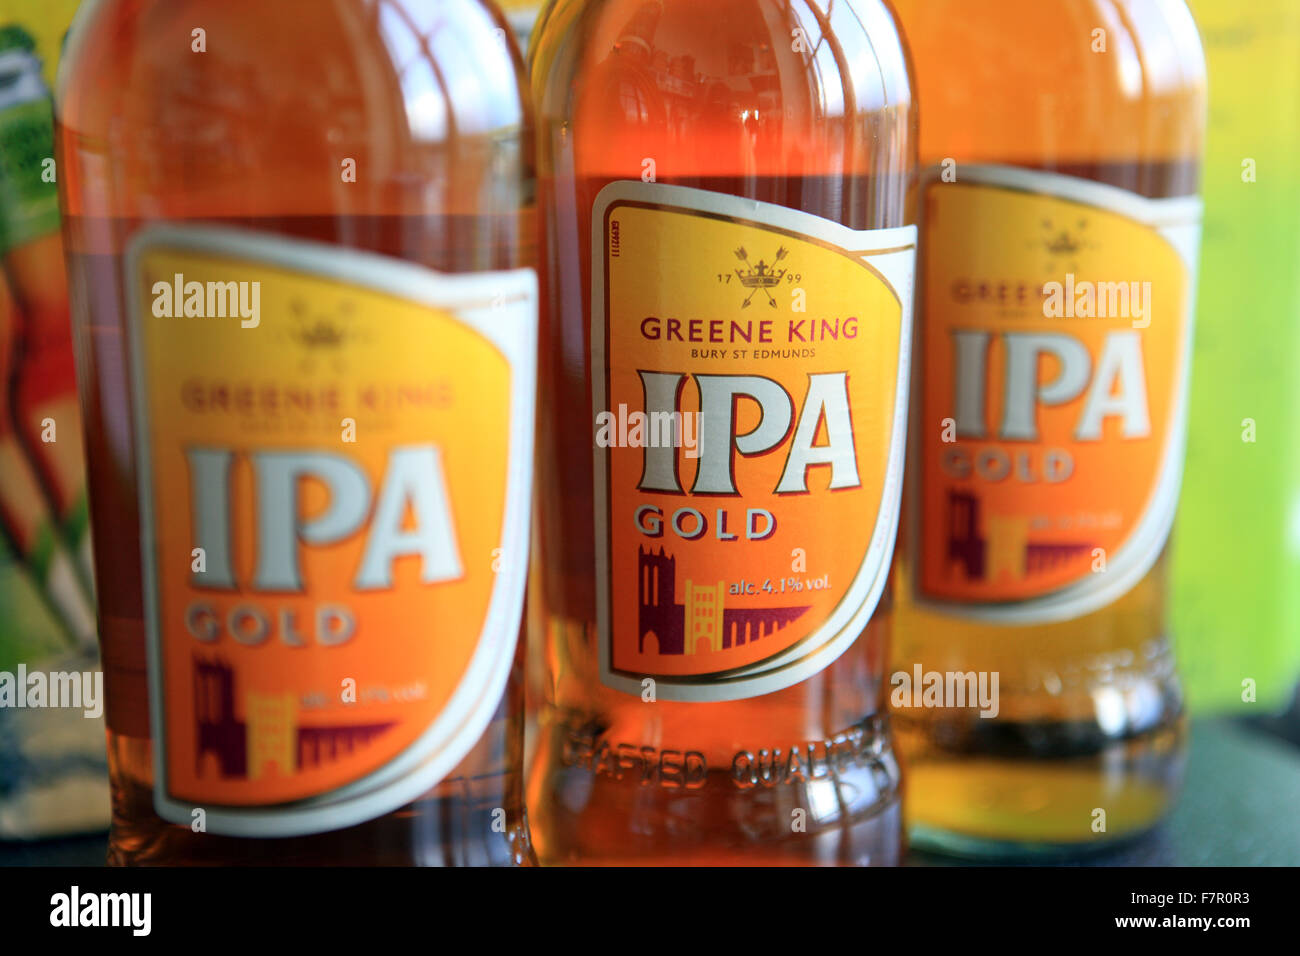 Bottiglie di IPA (India Pale Ale) Oro dalla Greene King la fabbrica di birra nel Regno Unito Foto Stock